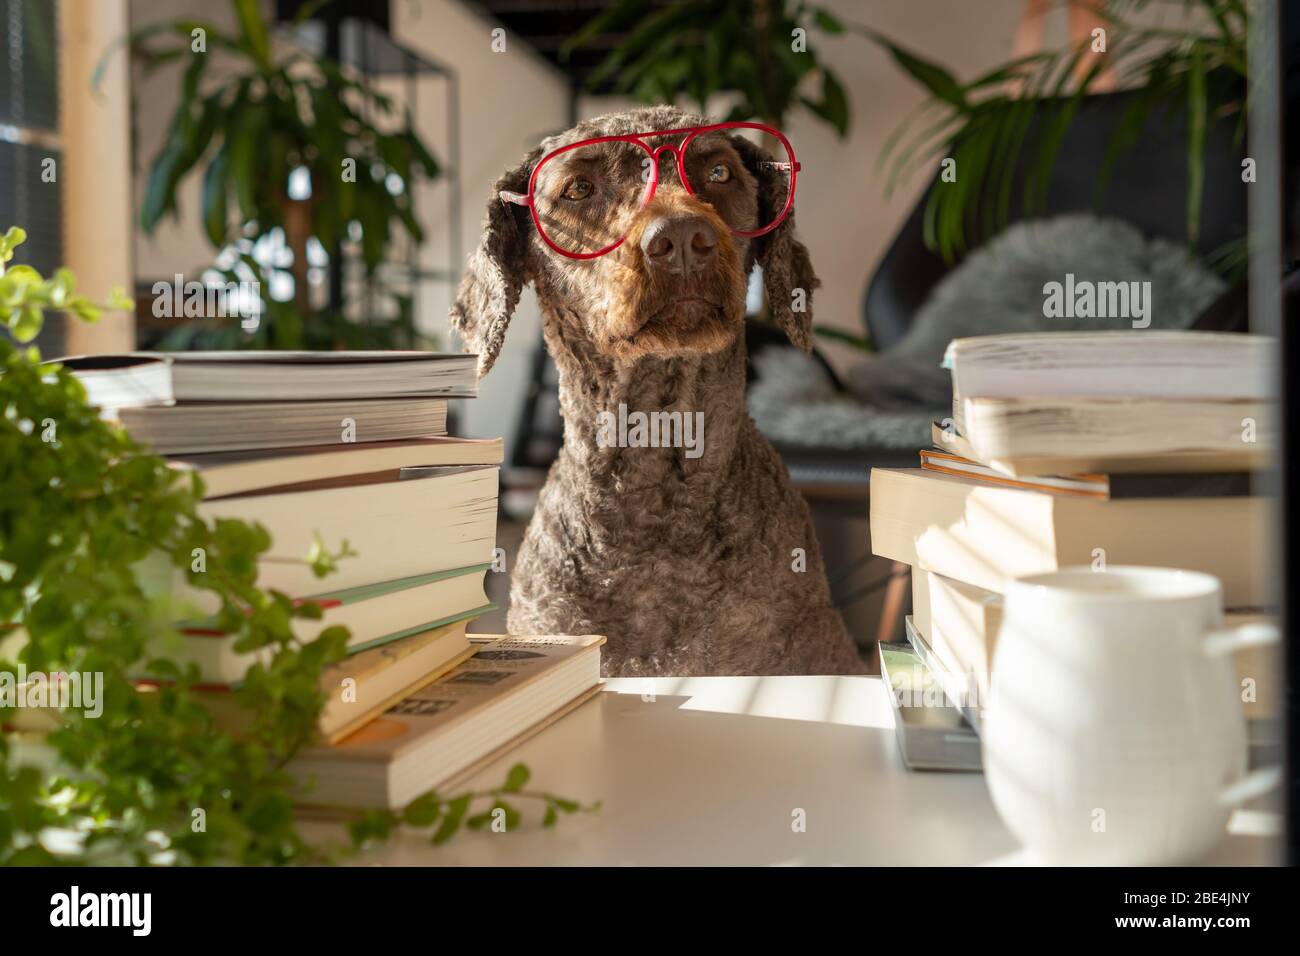 Un chien portant des verres rouges entre une pile de livres à l'intérieur d'un appartement avec de nombreuses plantes au coucher du soleil Banque D'Images